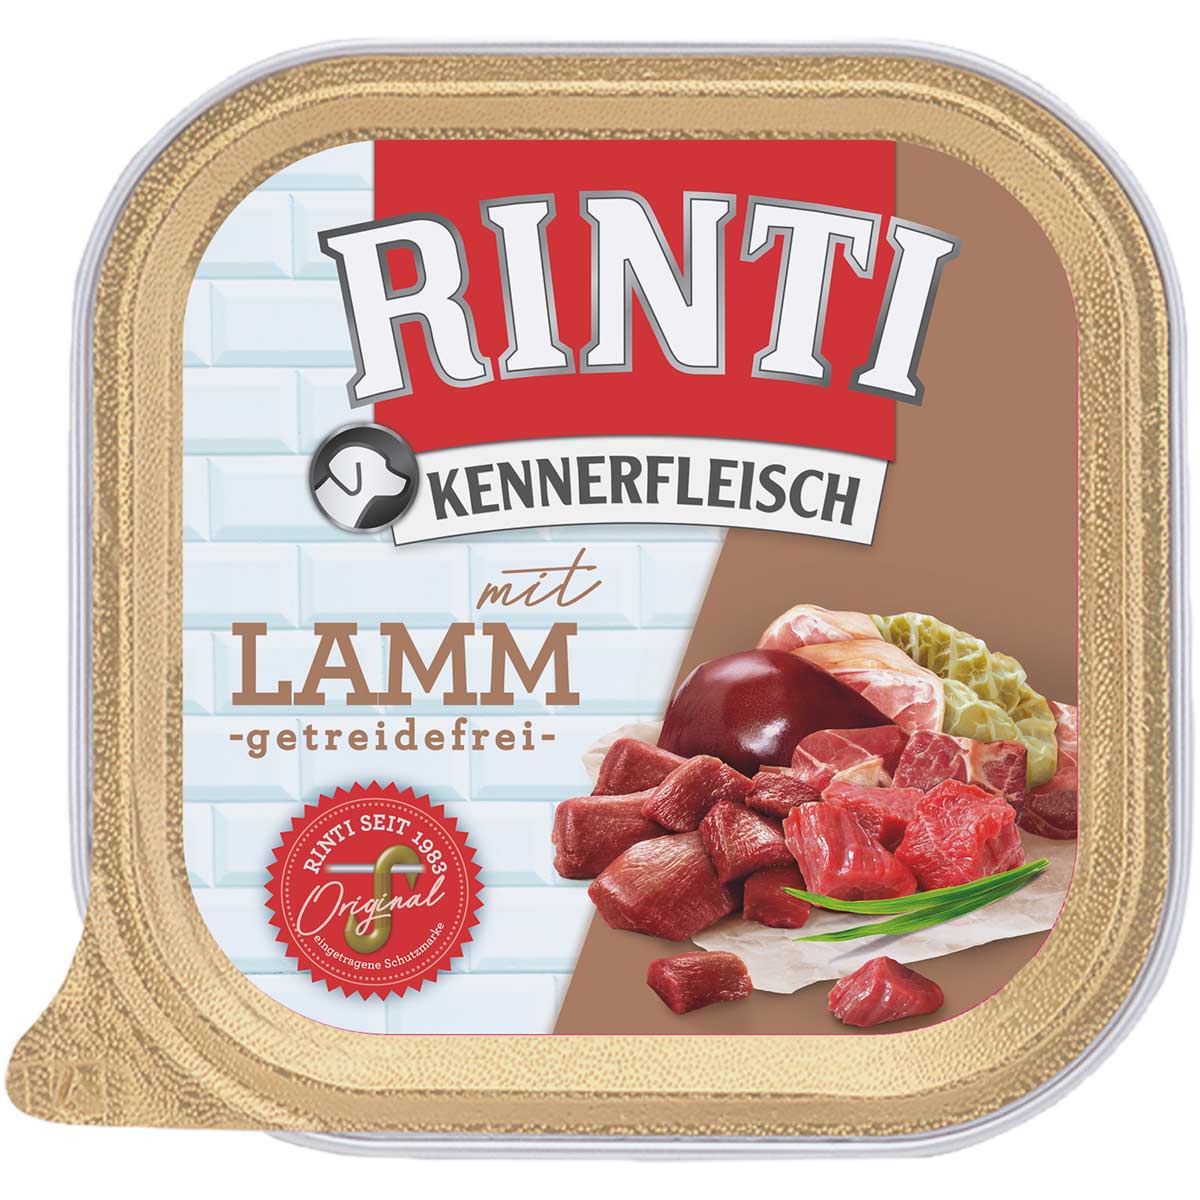 Rinti Kennerfleisch mit Lamm 9x300g von Rinti